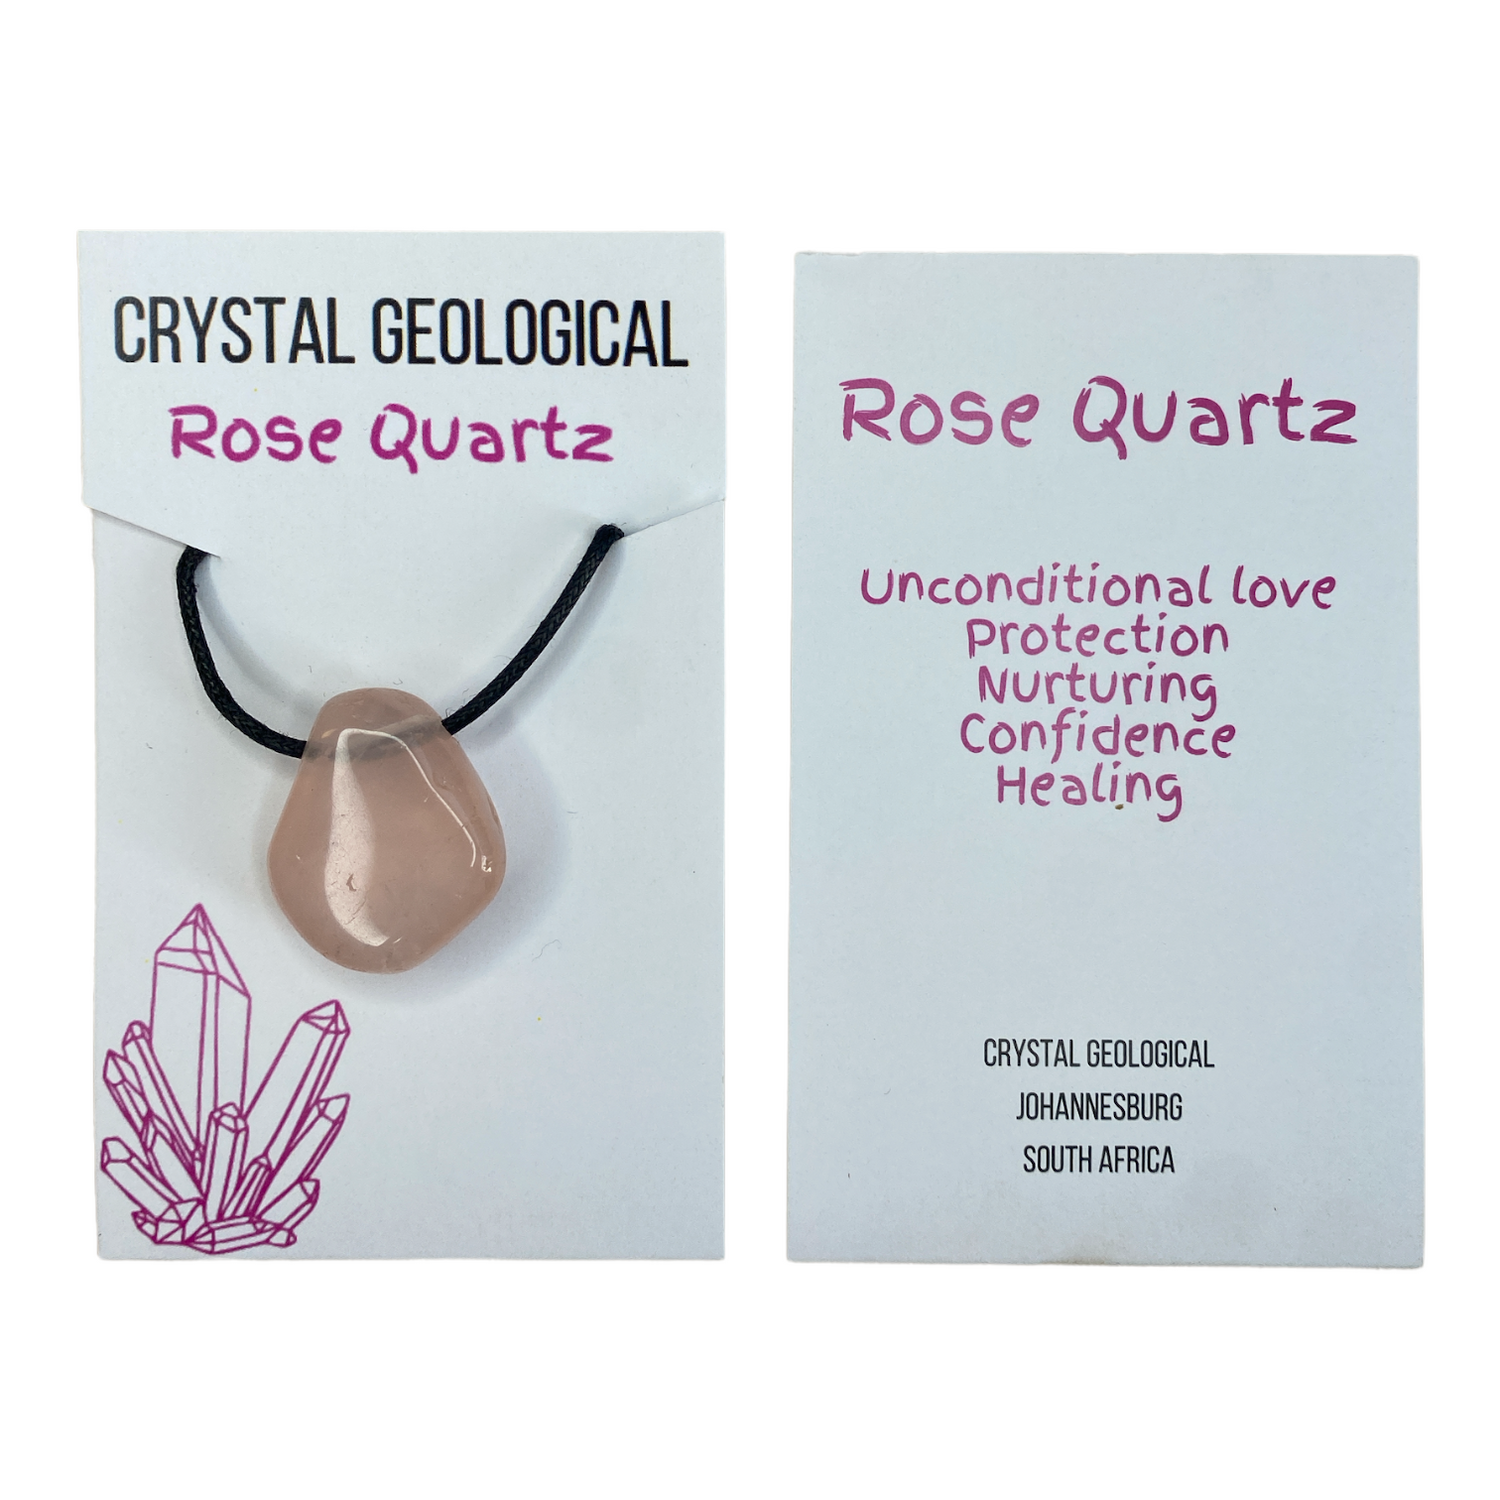 Rose Quartz Tumble Stone Necklace - Crystal Geological